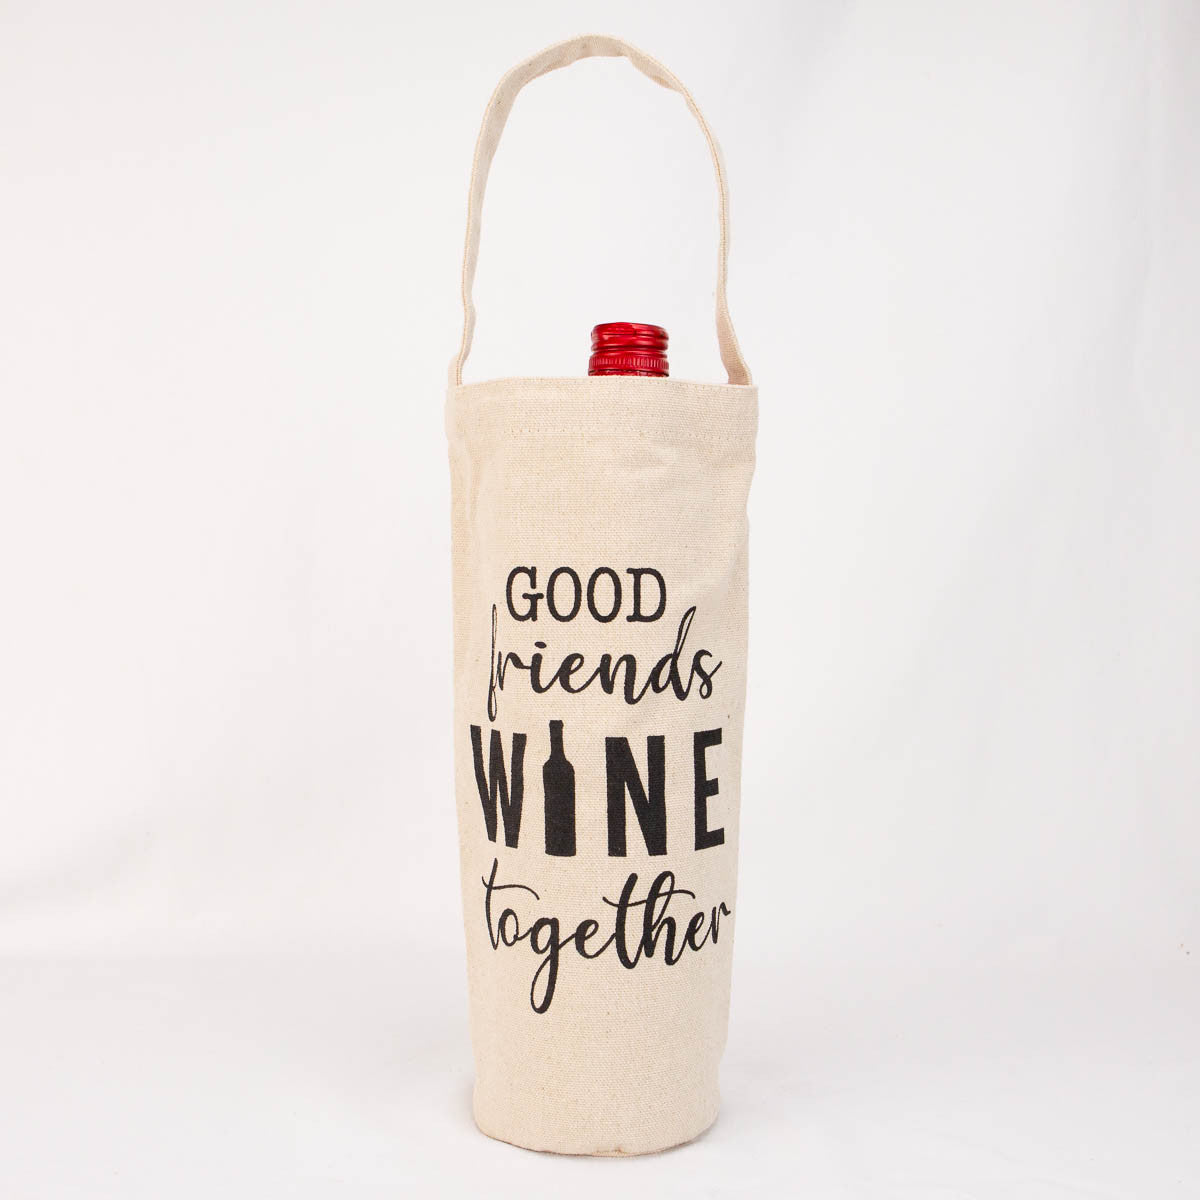 Friends Wine Together Bag